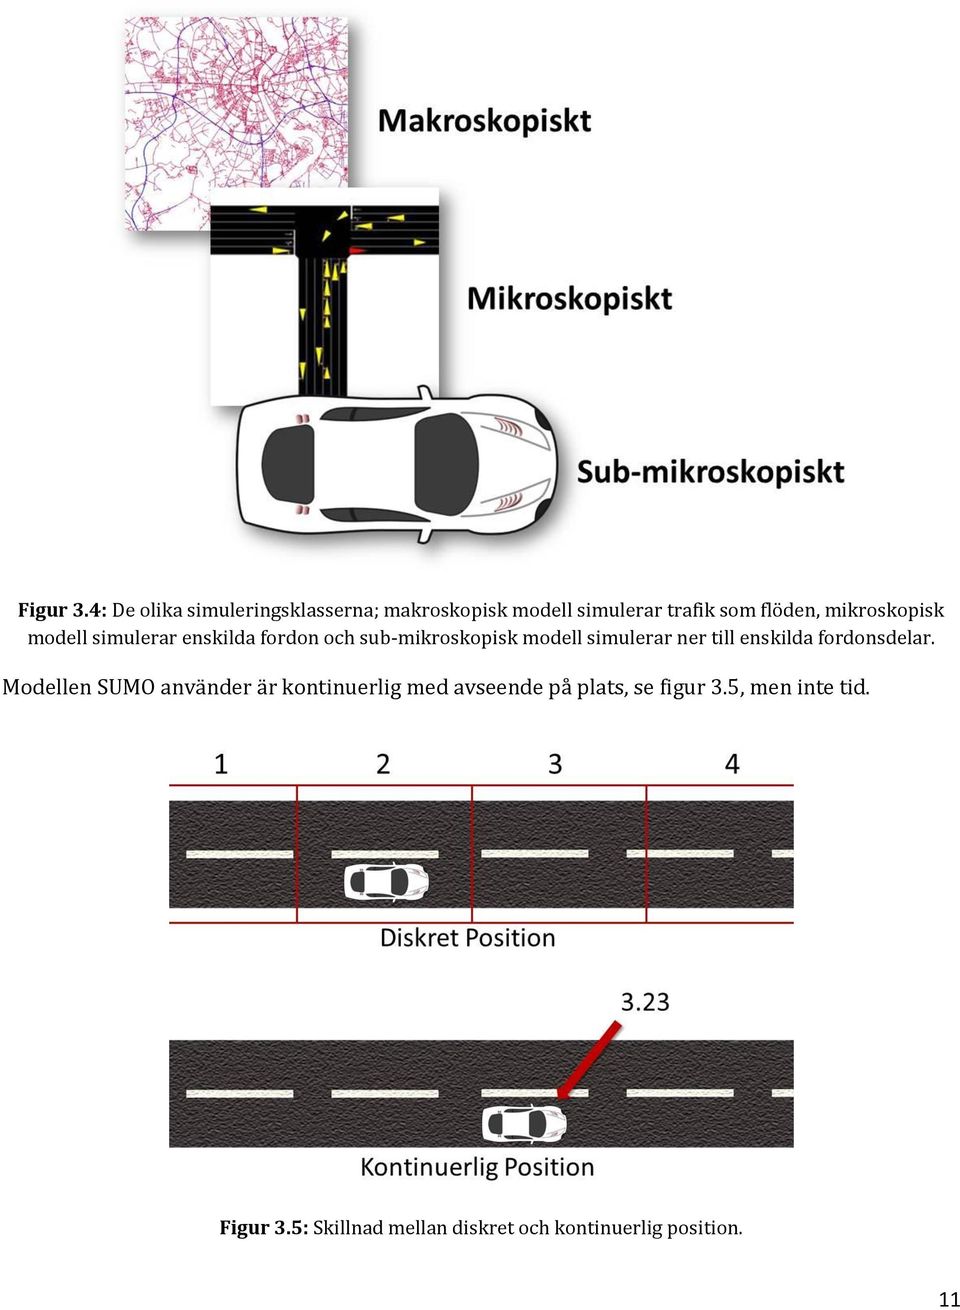 mikroskopisk modell simulerar enskilda fordon och sub-mikroskopisk modell simulerar ner